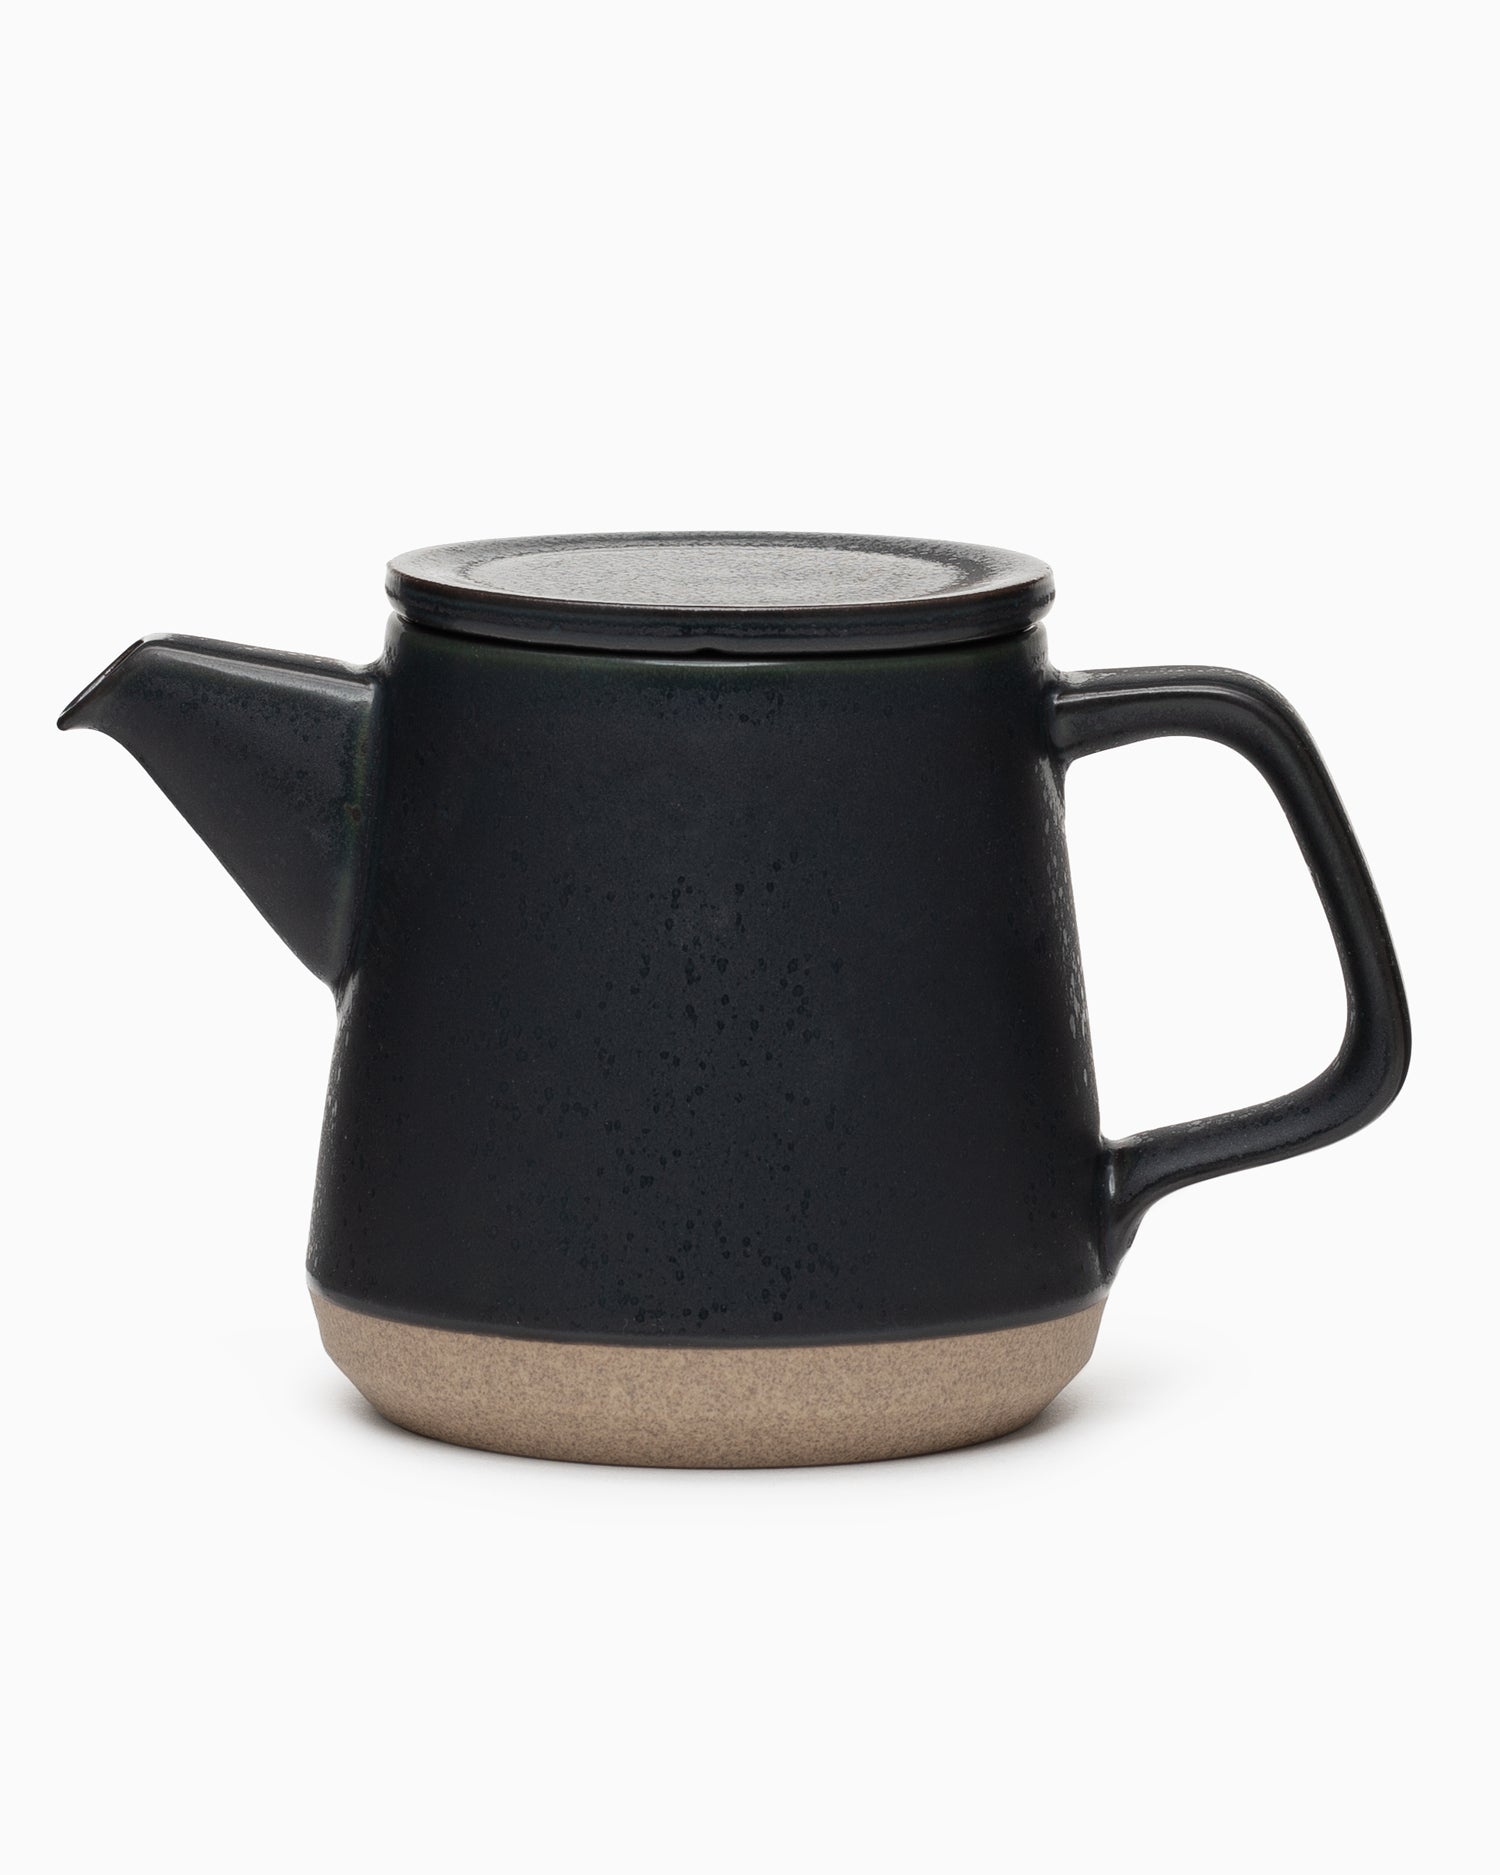 CLK-151 Teapot 500ml Black